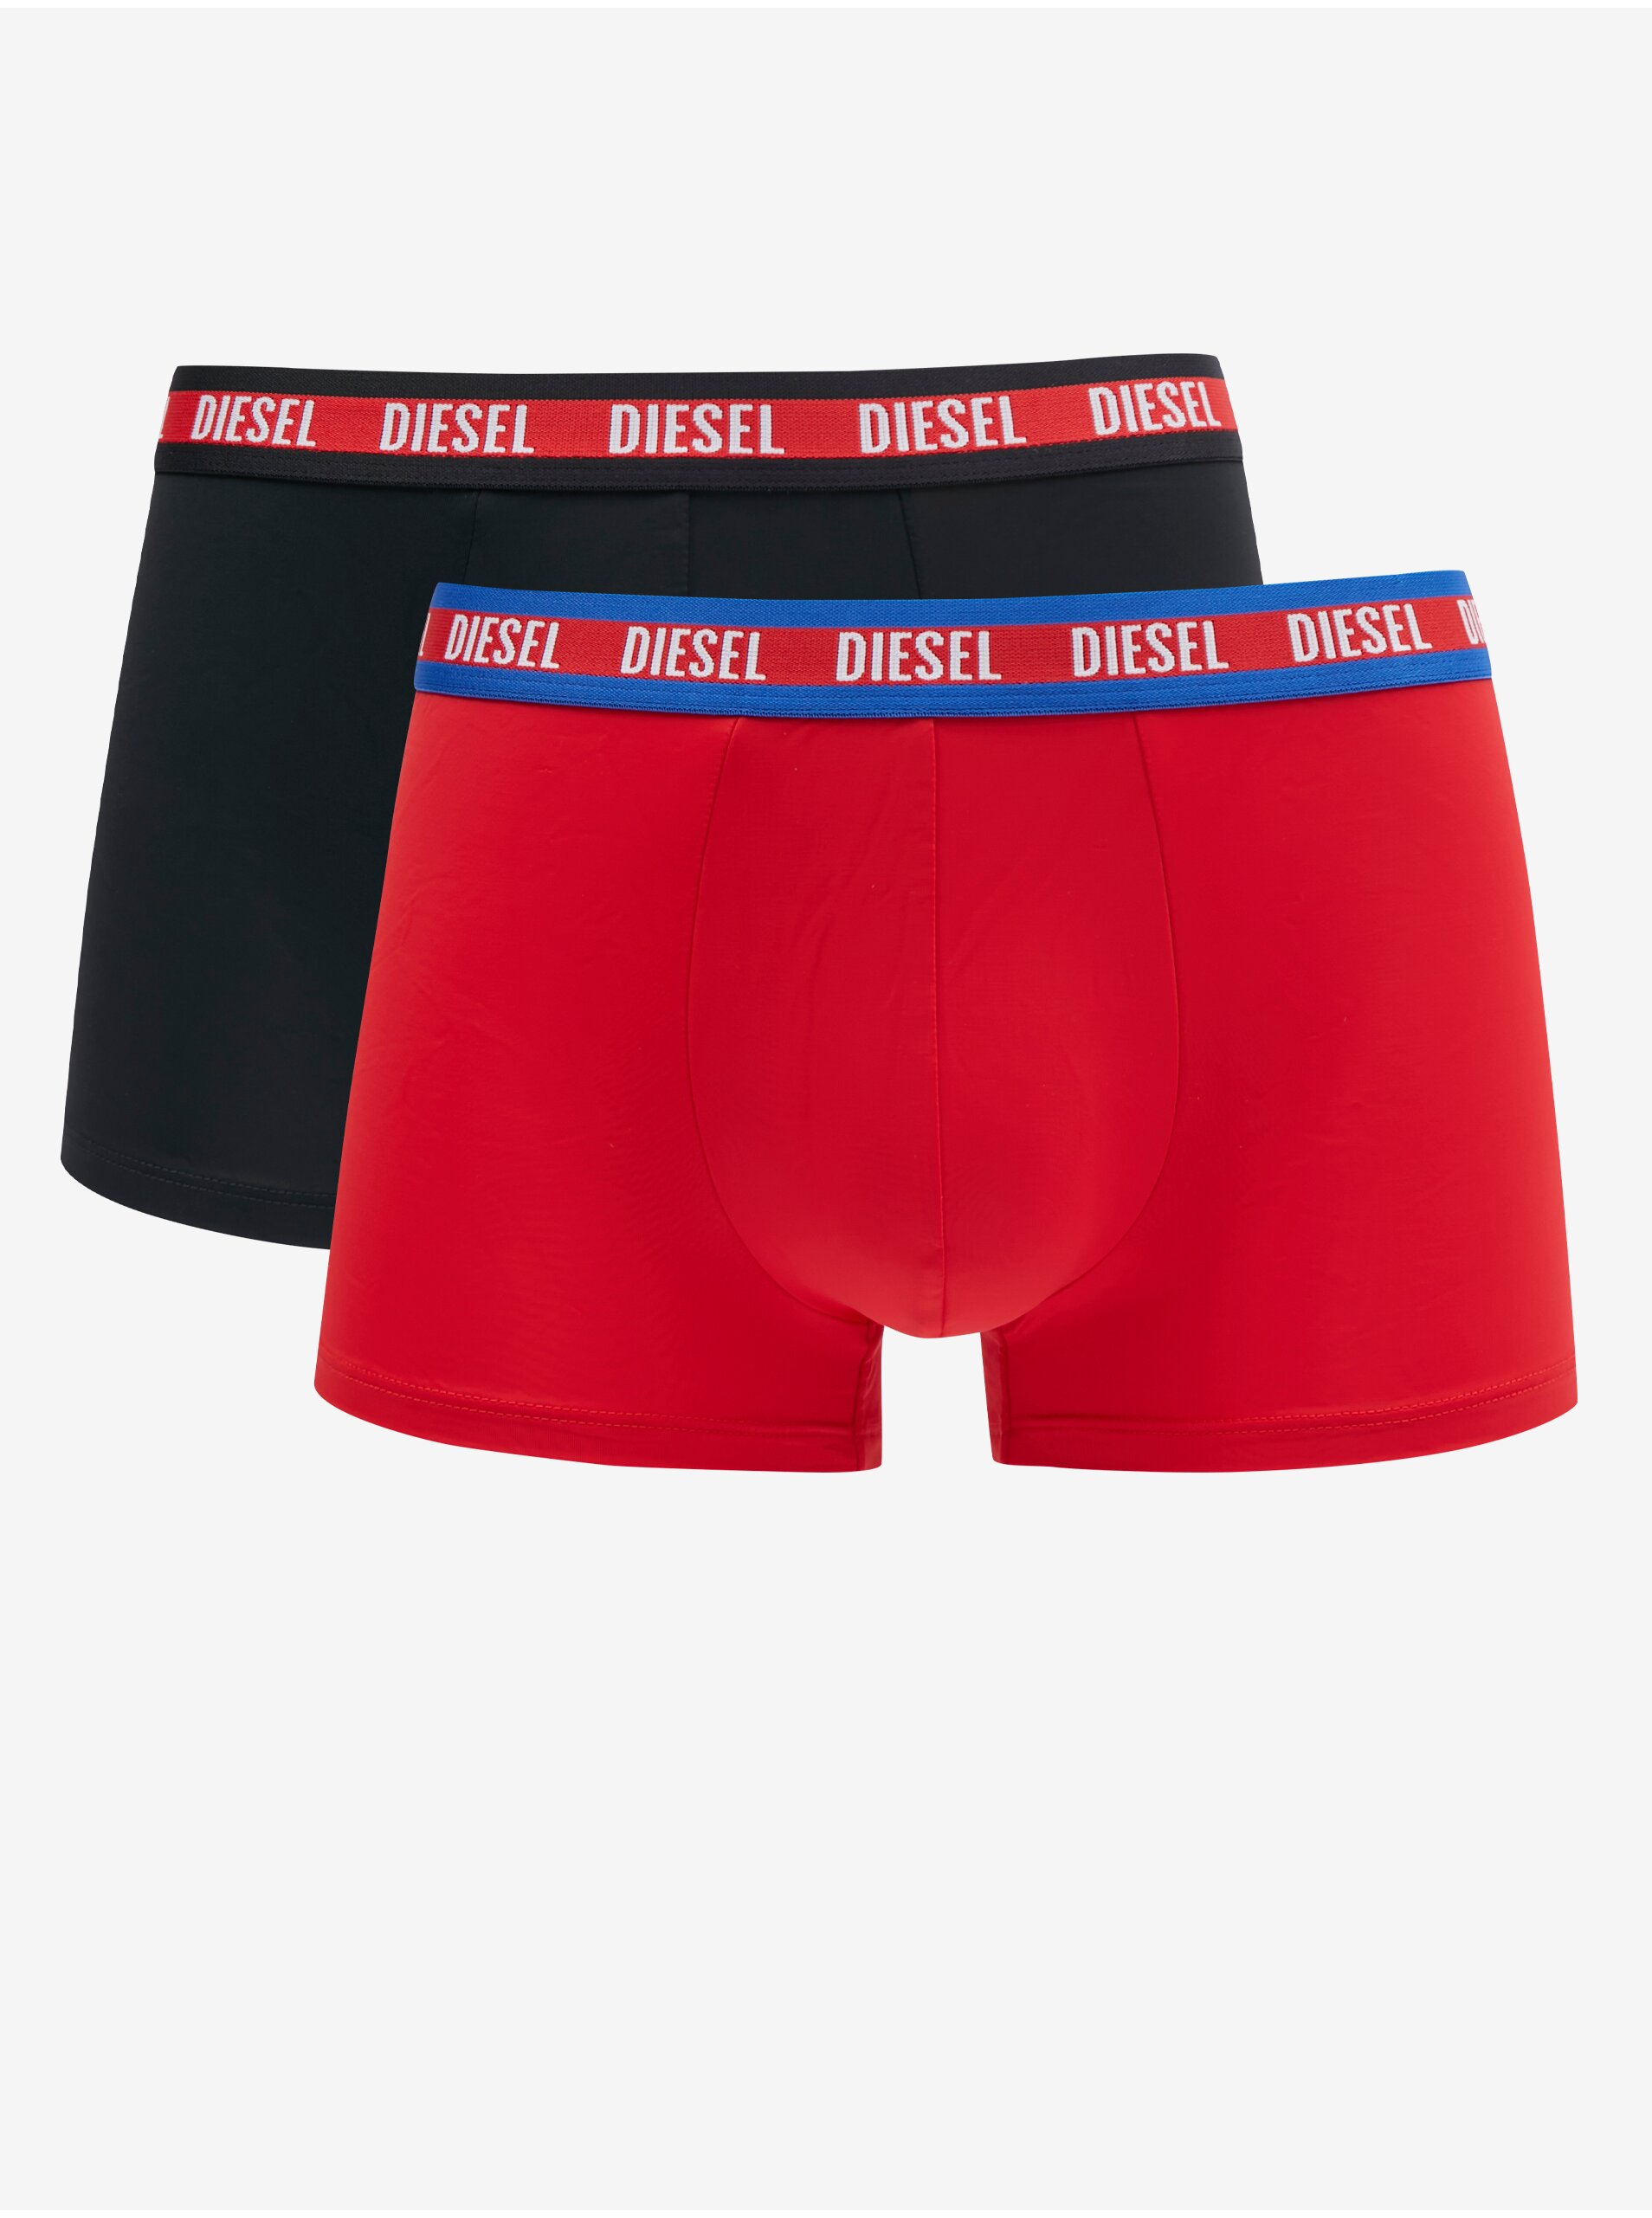 Lacno Súprava dvoch pánskych boxeriek v čiernej a červenej farbe Diesel